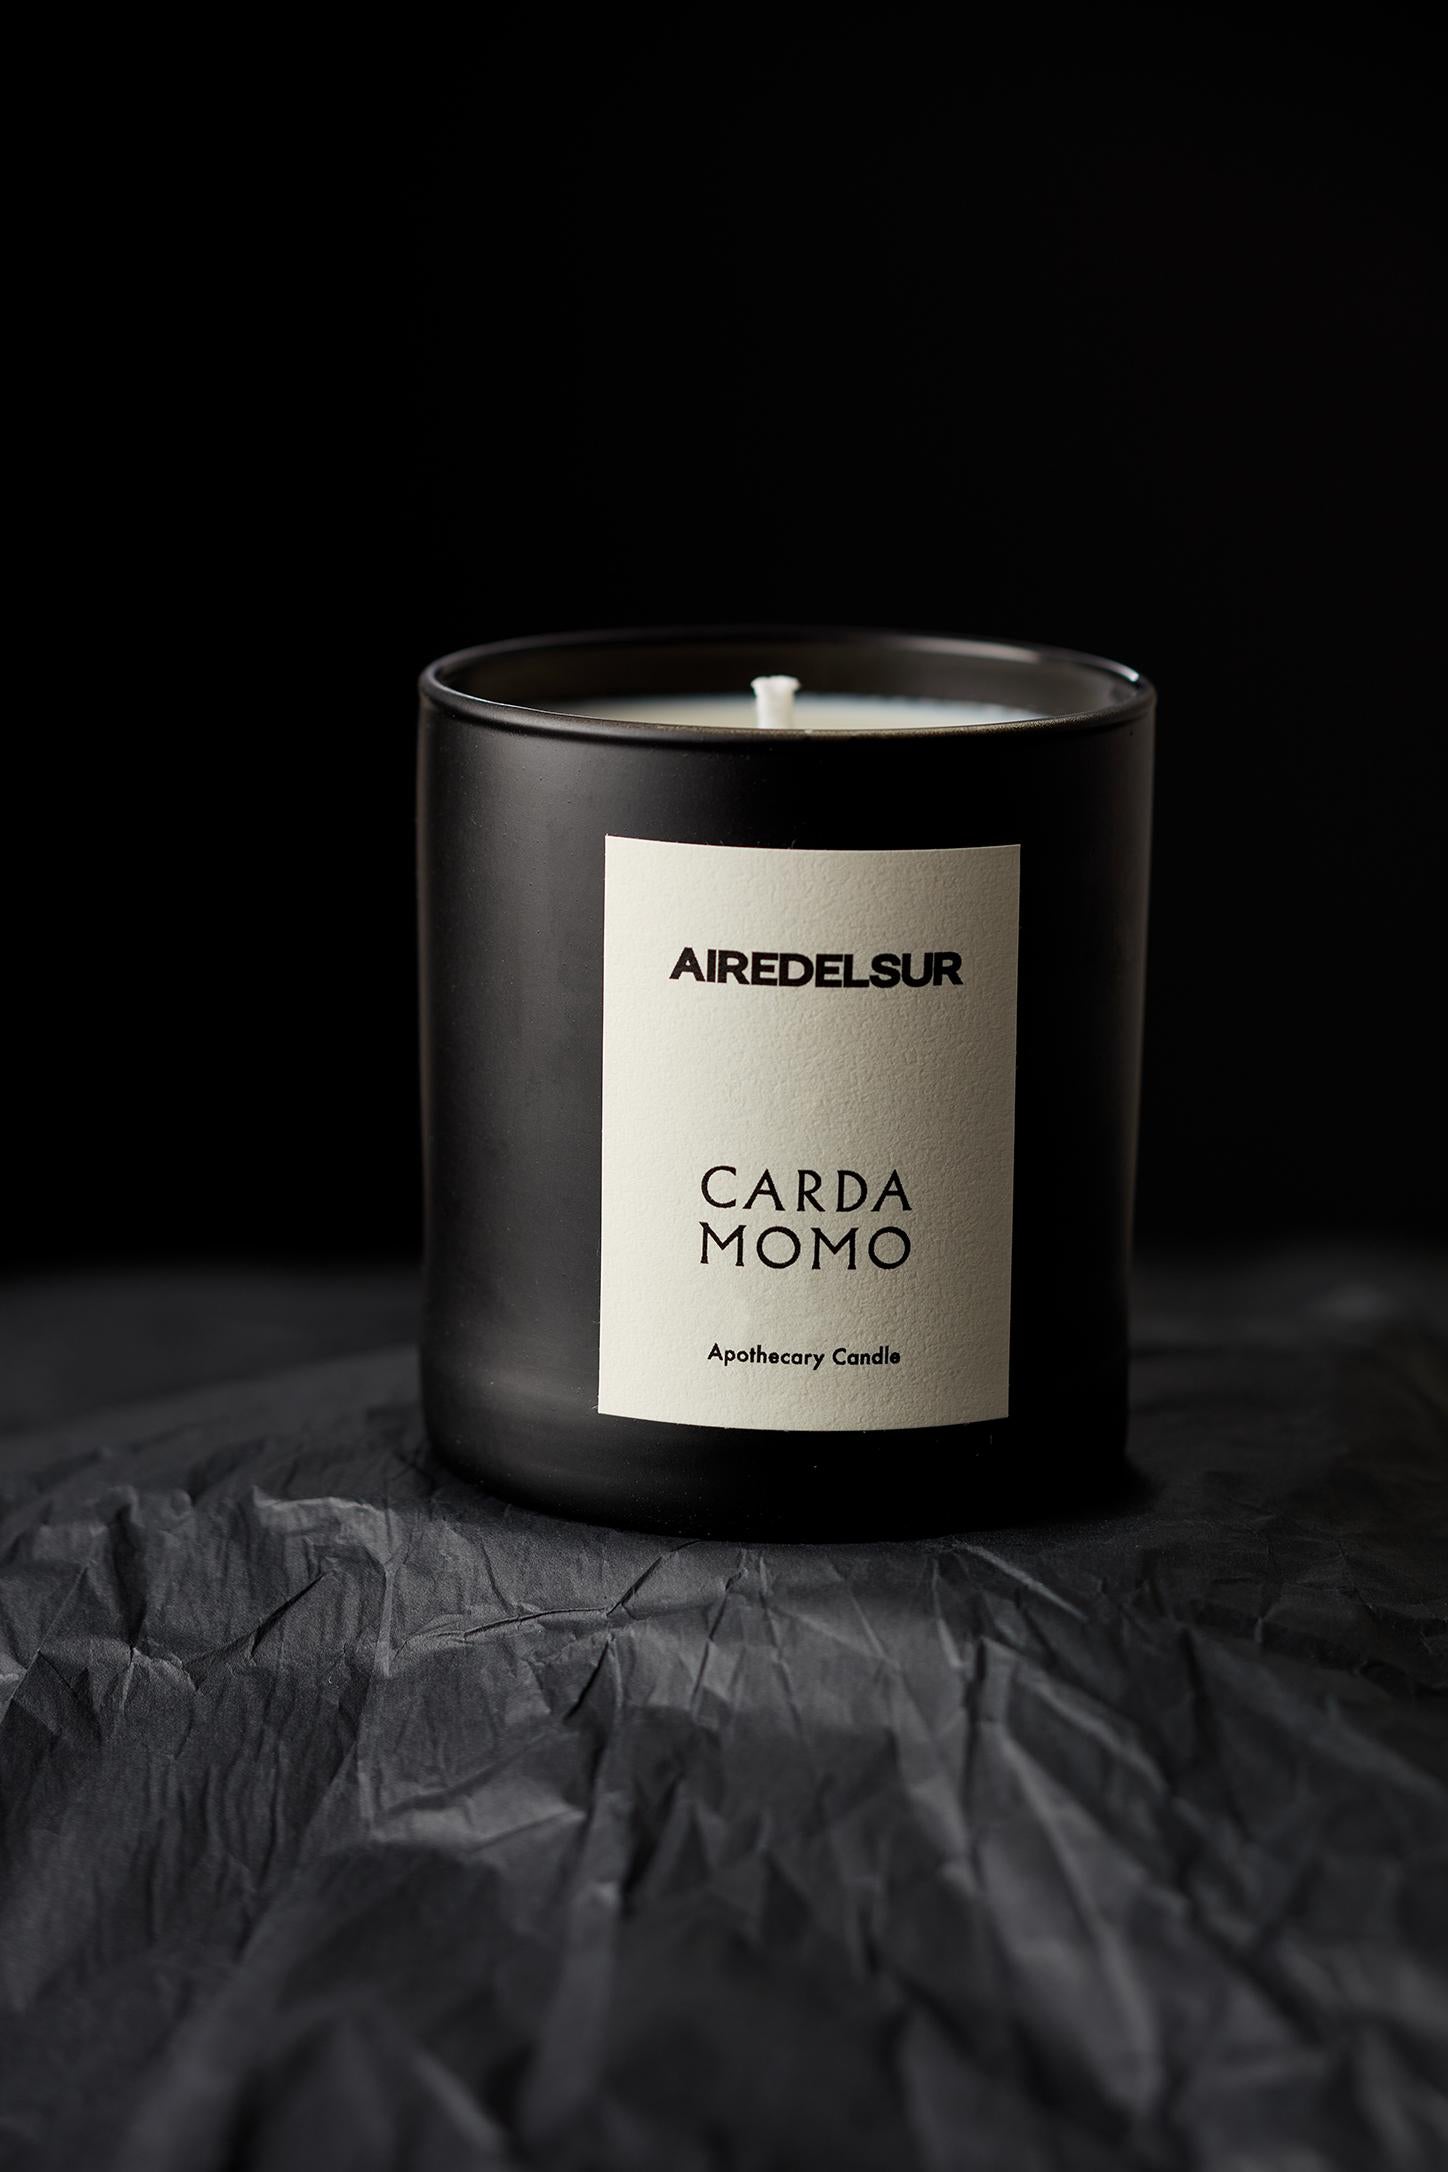 Wir stellen die Duftkerze CARDAMOMO vor, inspiriert von den MATERIALEN, die uns die Natur bietet. Jedes Stück ist eine Erinnerung an die Art und Weise, wie die Marke die Modernität aus der Tradition heraus interpretiert.

CARDAMOMO: Diese Kerze